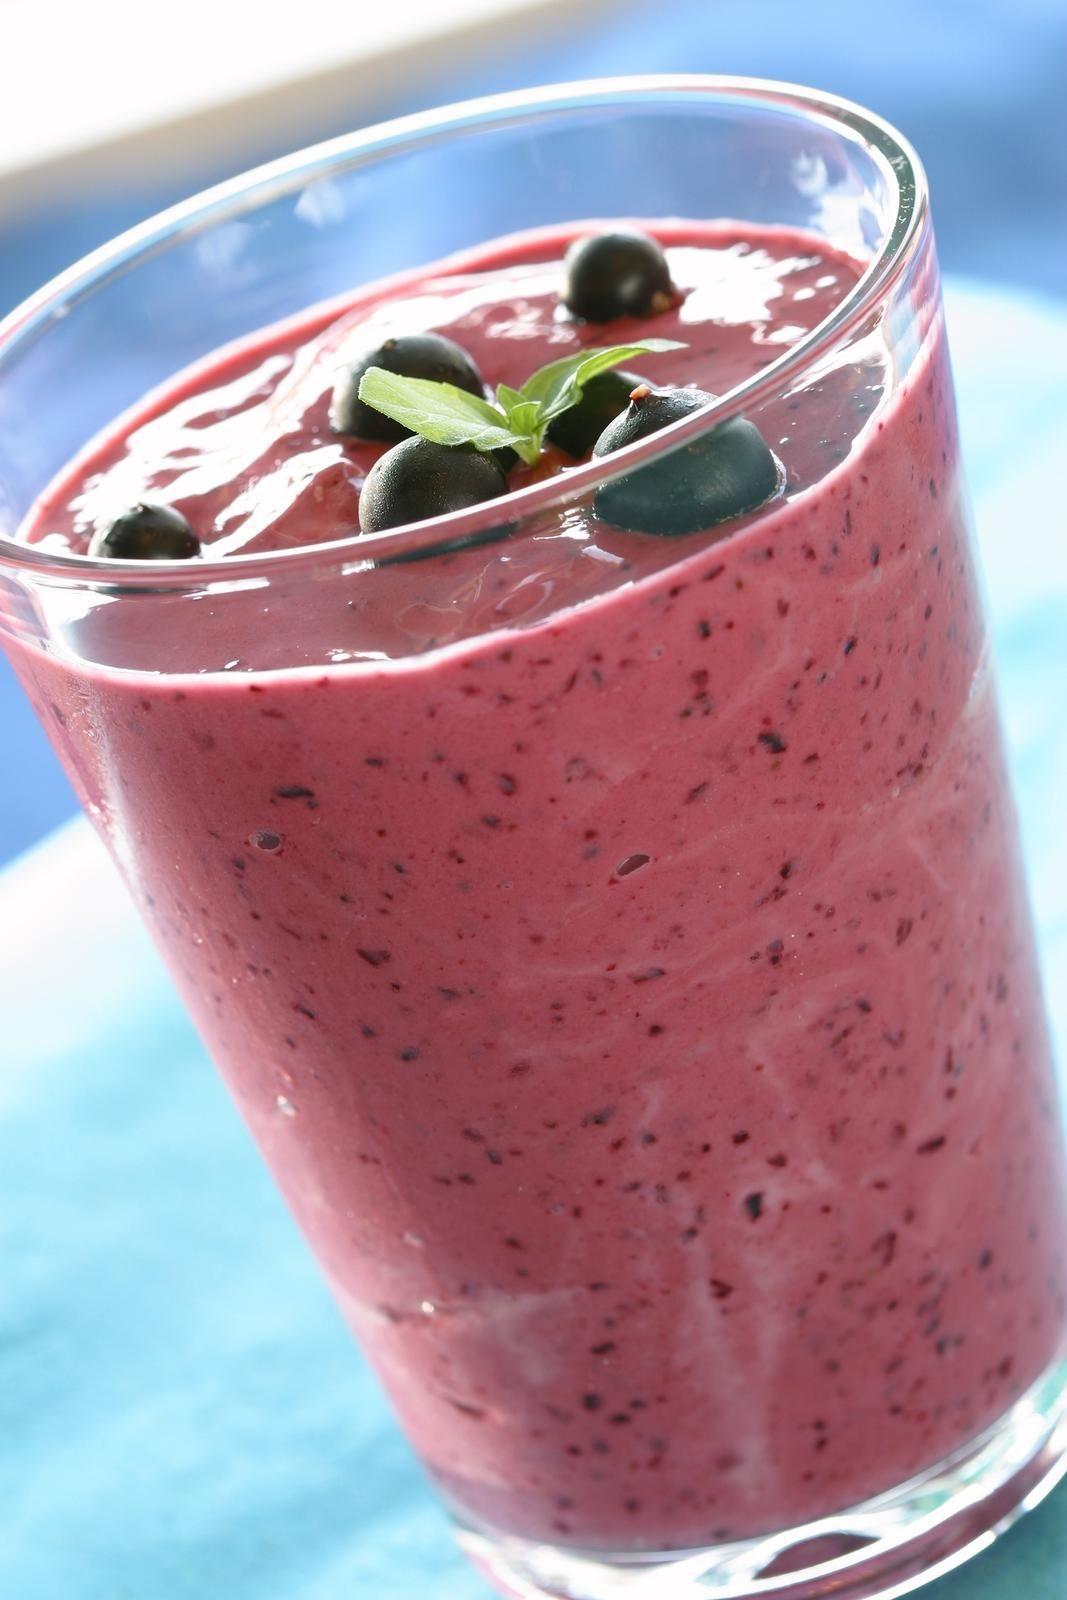 Deilig smoothie med yoghurt og bjørnebær er en god start på dagen. (Foto: Opplysningskontoret for frukt og grønt.)